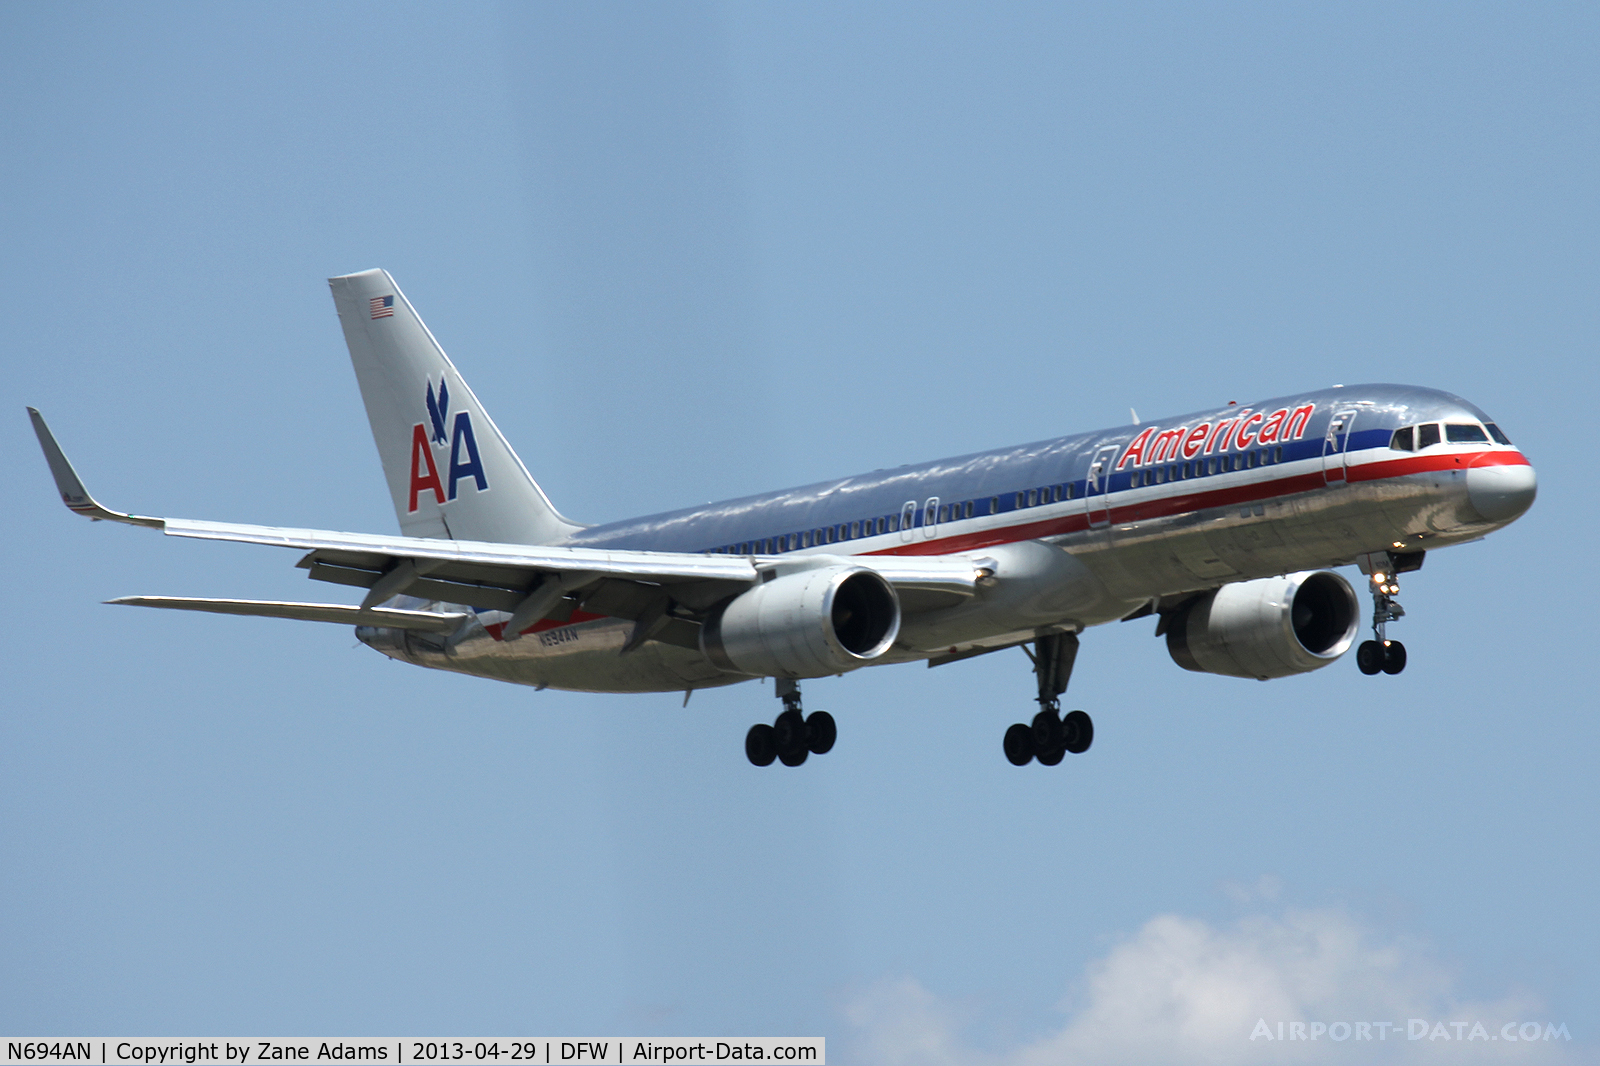 N694AN, 1994 Boeing 757-223 C/N 26974, American Airlines landing at DFW Airport